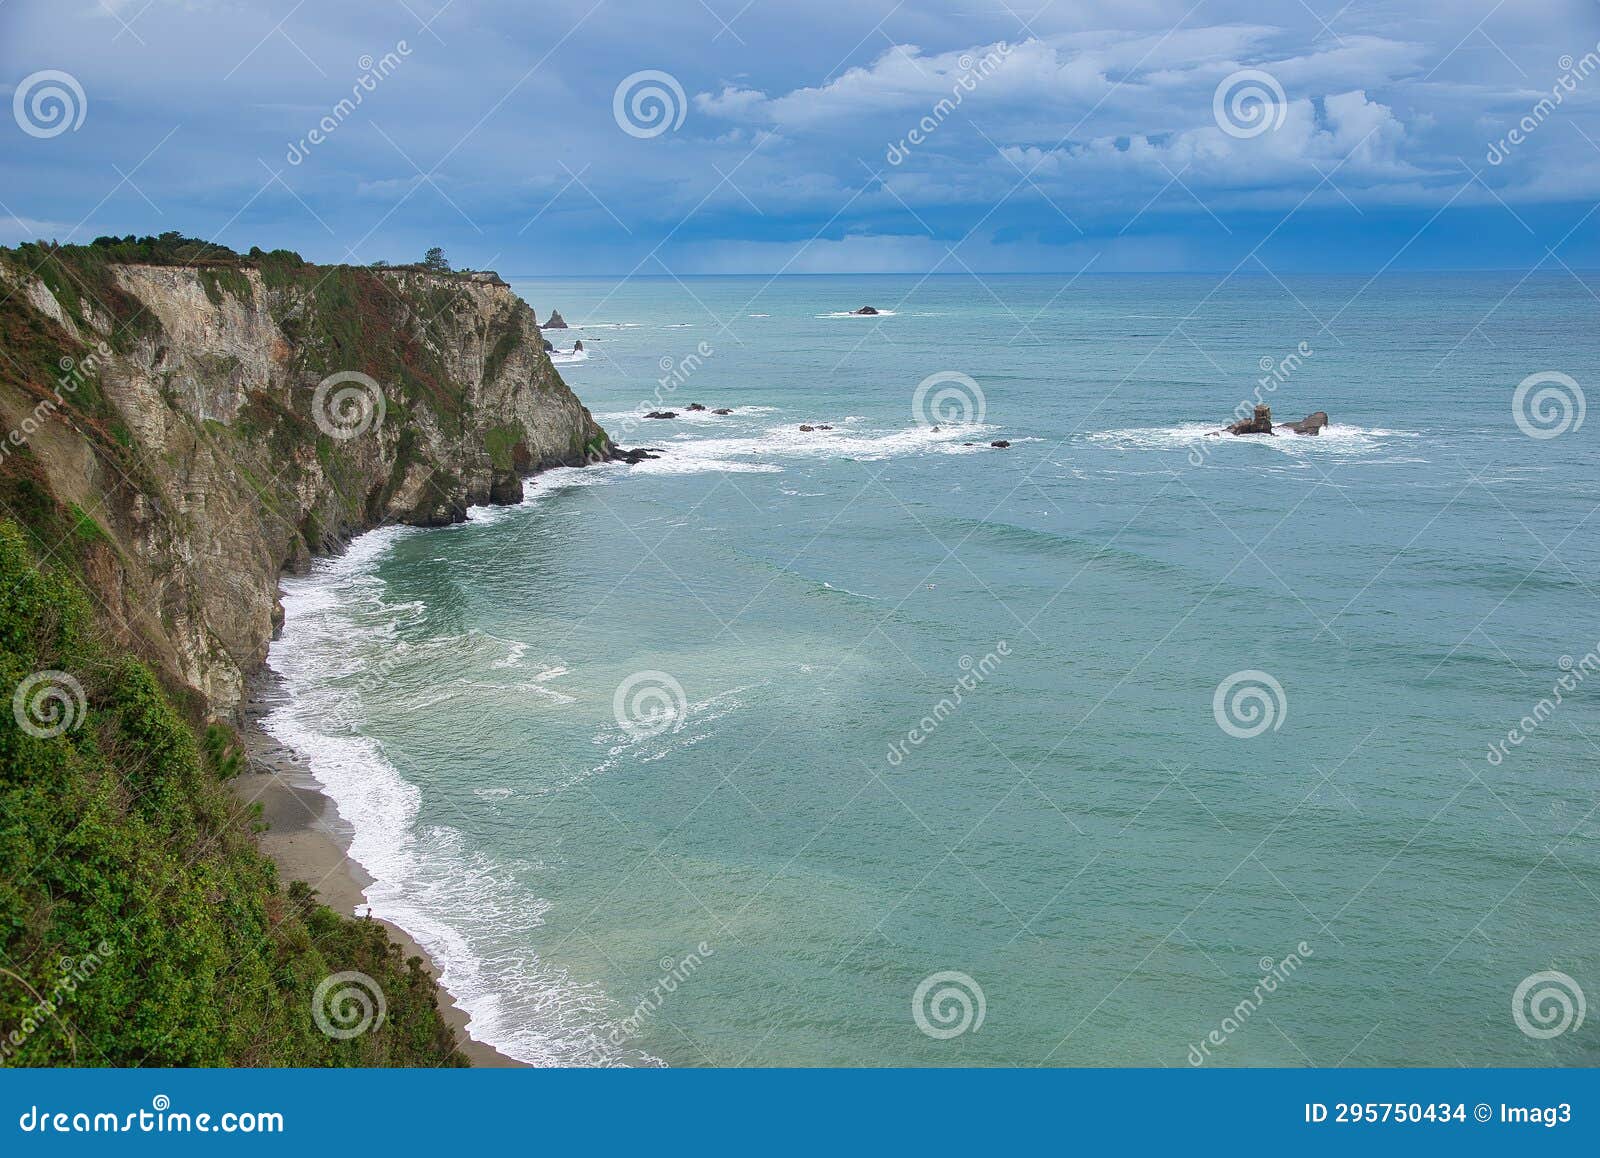 cliffs seen from punta de cuerno, near la regalina, cadacedo, asturias, spain